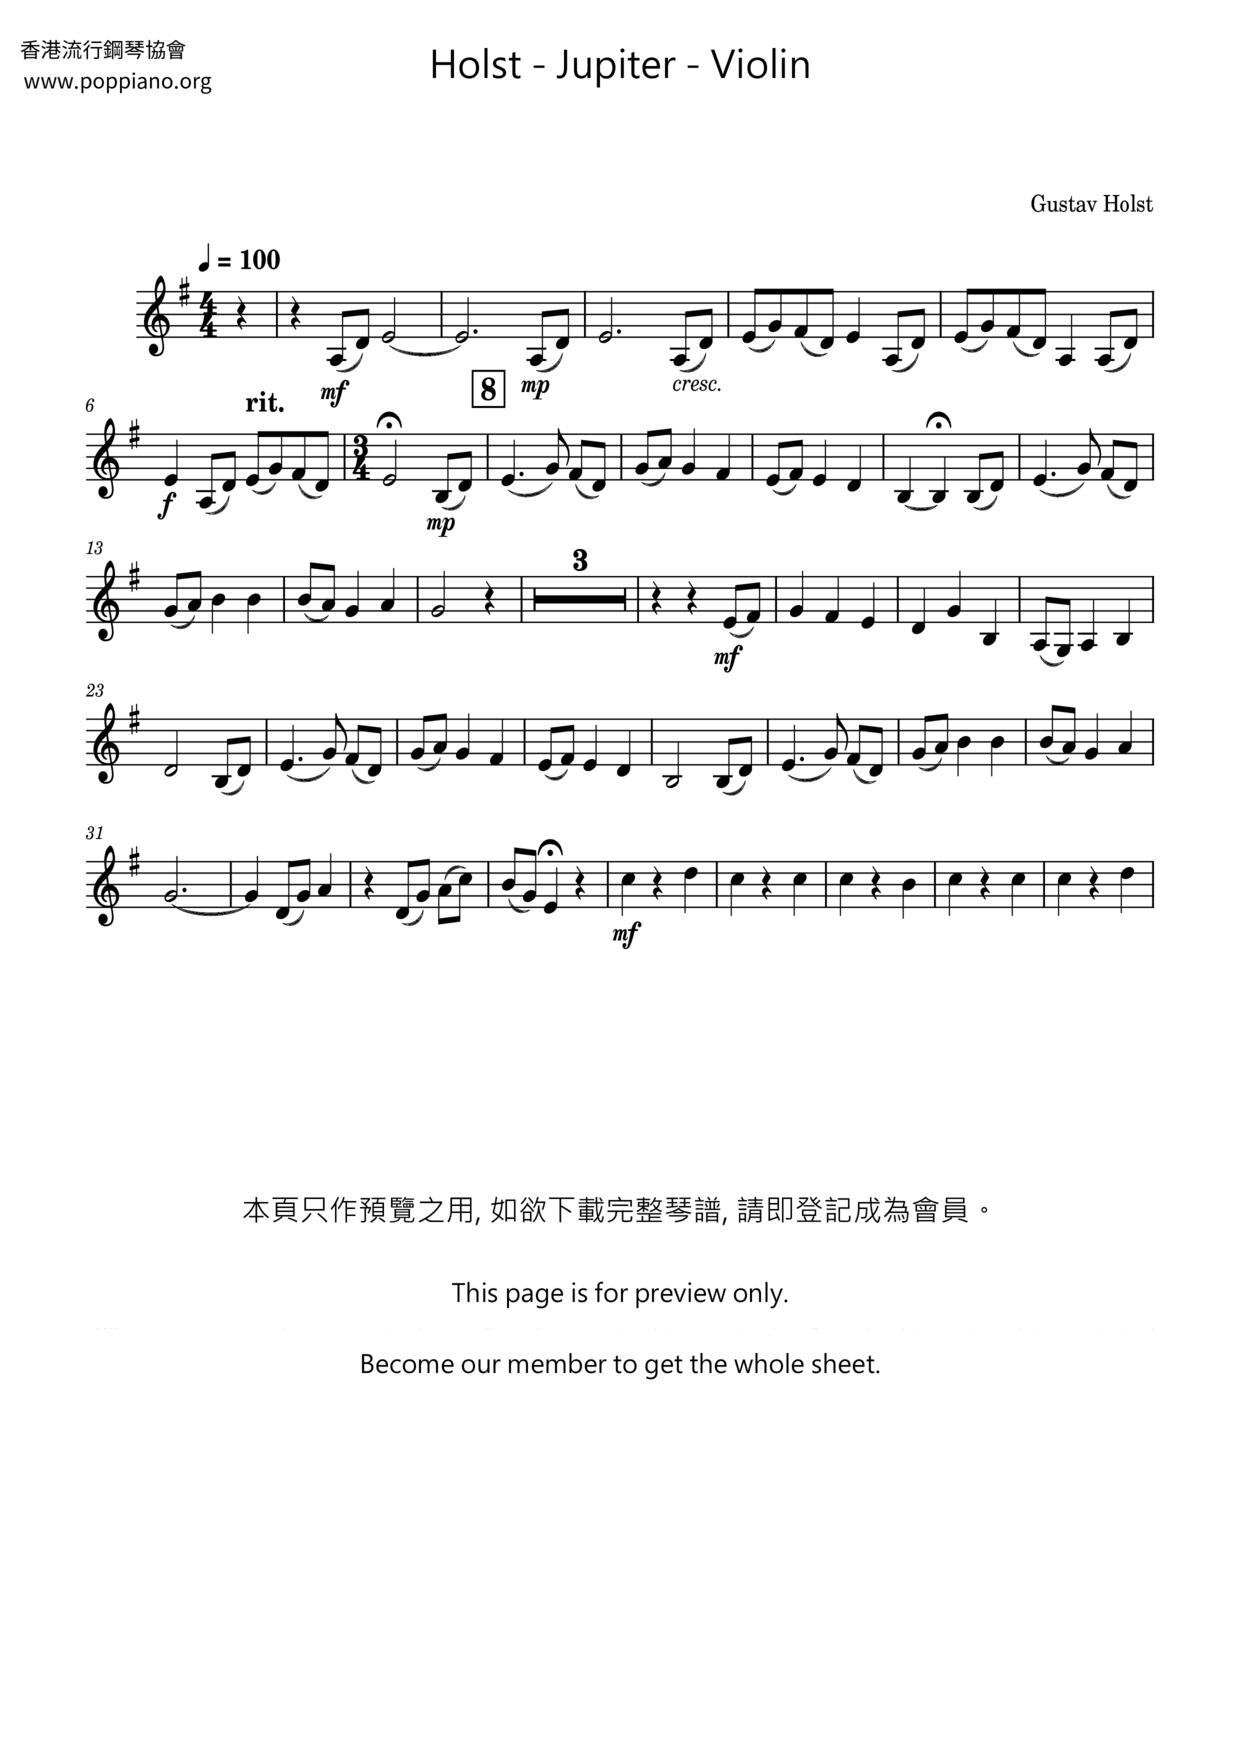 Jupiter - Violinピアノ譜